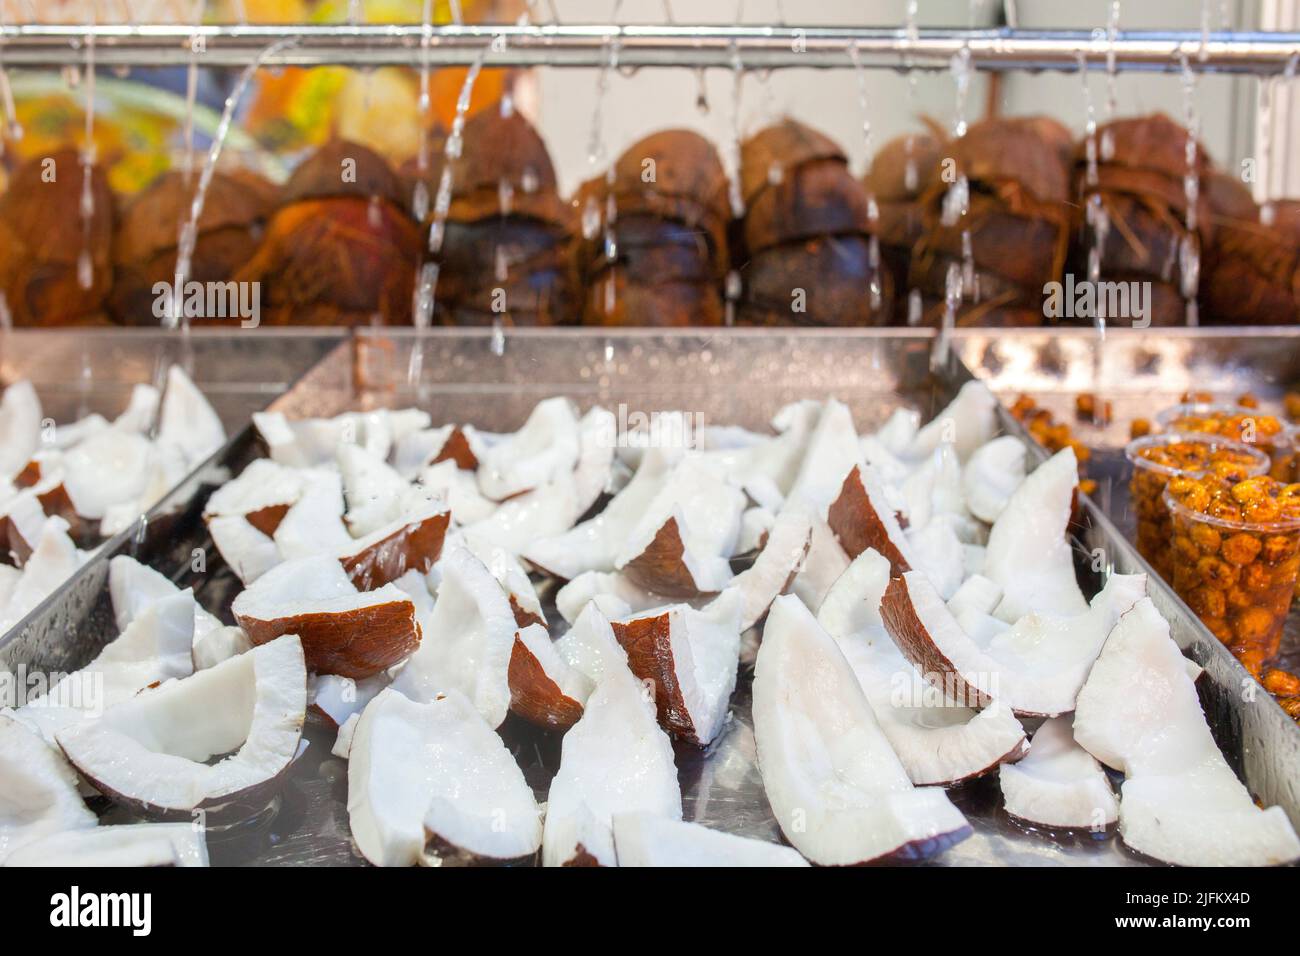 Tranches de noix de coco fraîches. Des gouttes d'eau tombent sur des pièces exposées au stand du marché de la rue. Banque D'Images